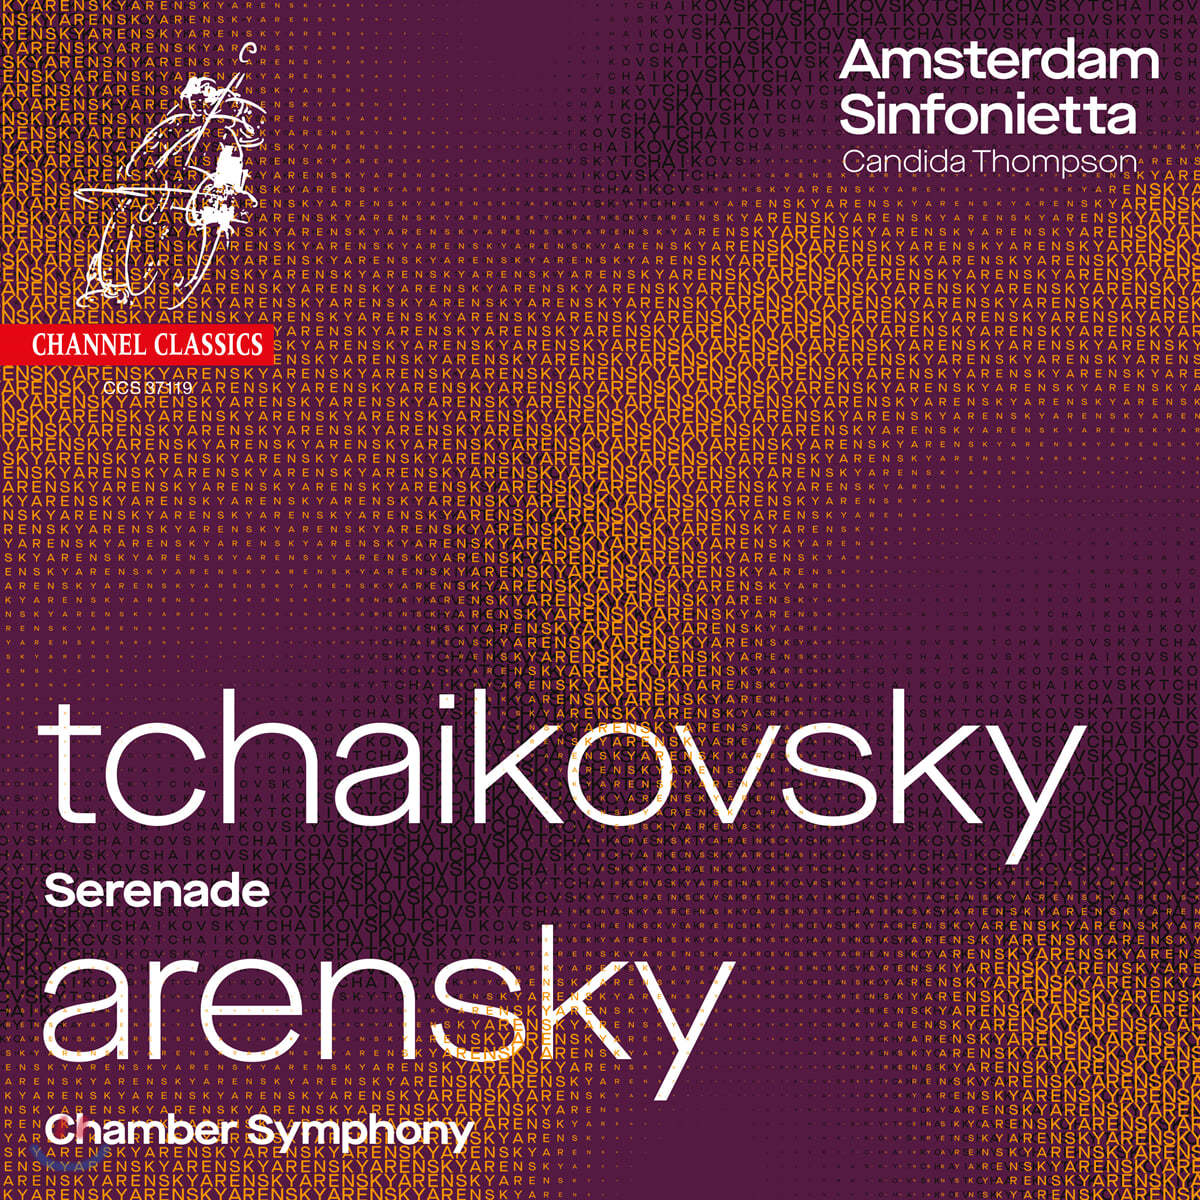 Amsterdam Sinfonietta 차이코프스키: 현을 위한 세레나데 / 아렌스키: 실내 교향곡 - 암스테르담 신포니에타